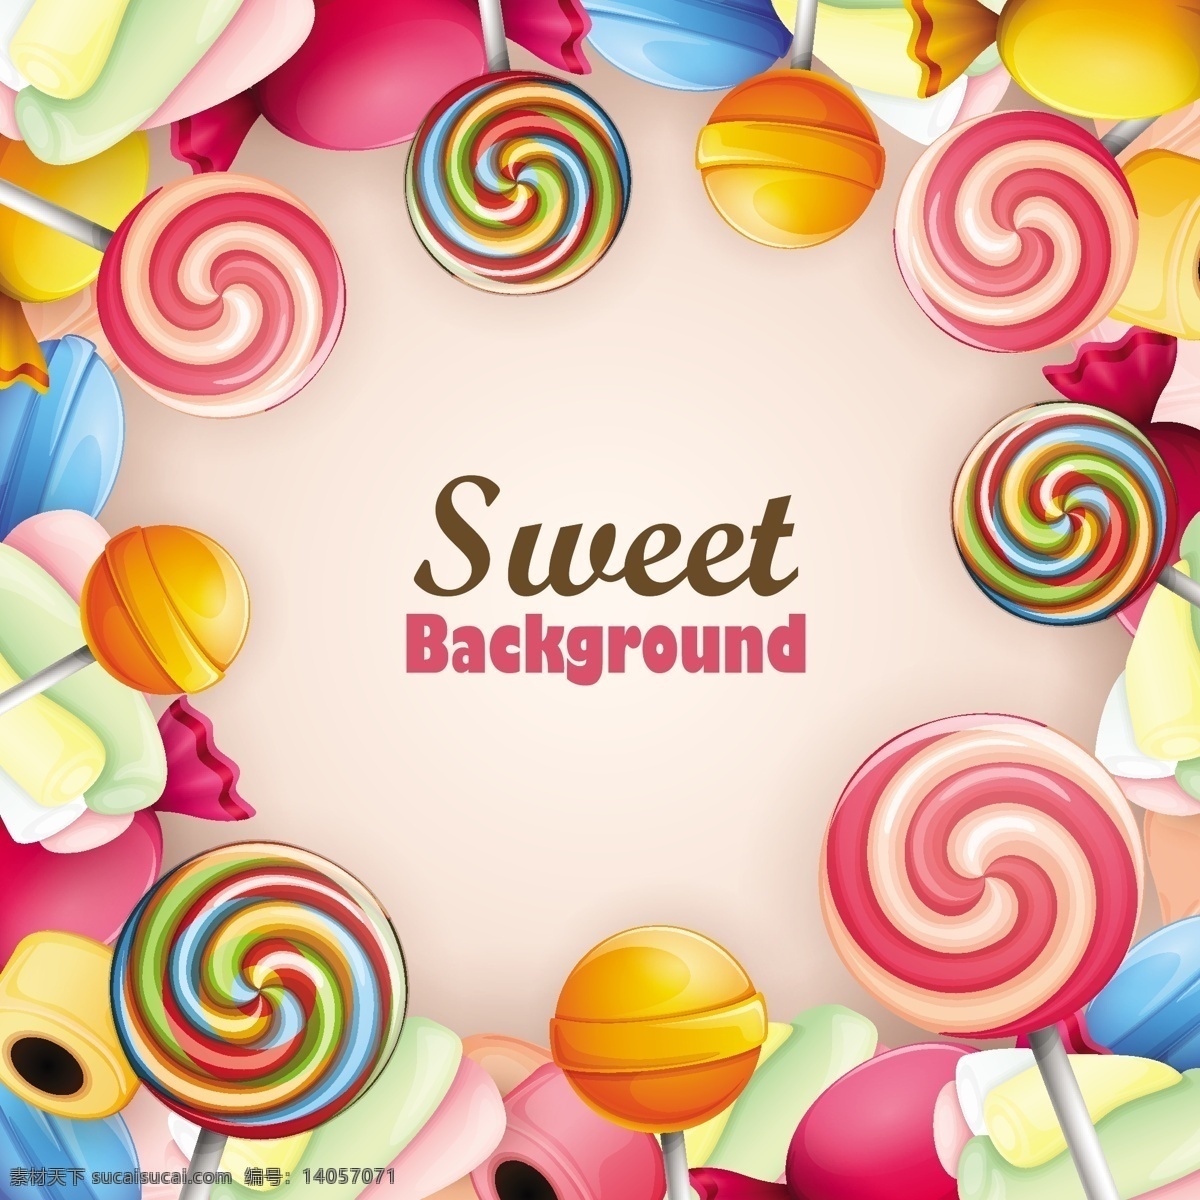 手绘 彩绘 矢量 糖果 棒棒糖 绘糖果 彩绘糖果 硬糖 零食 广告设计素材